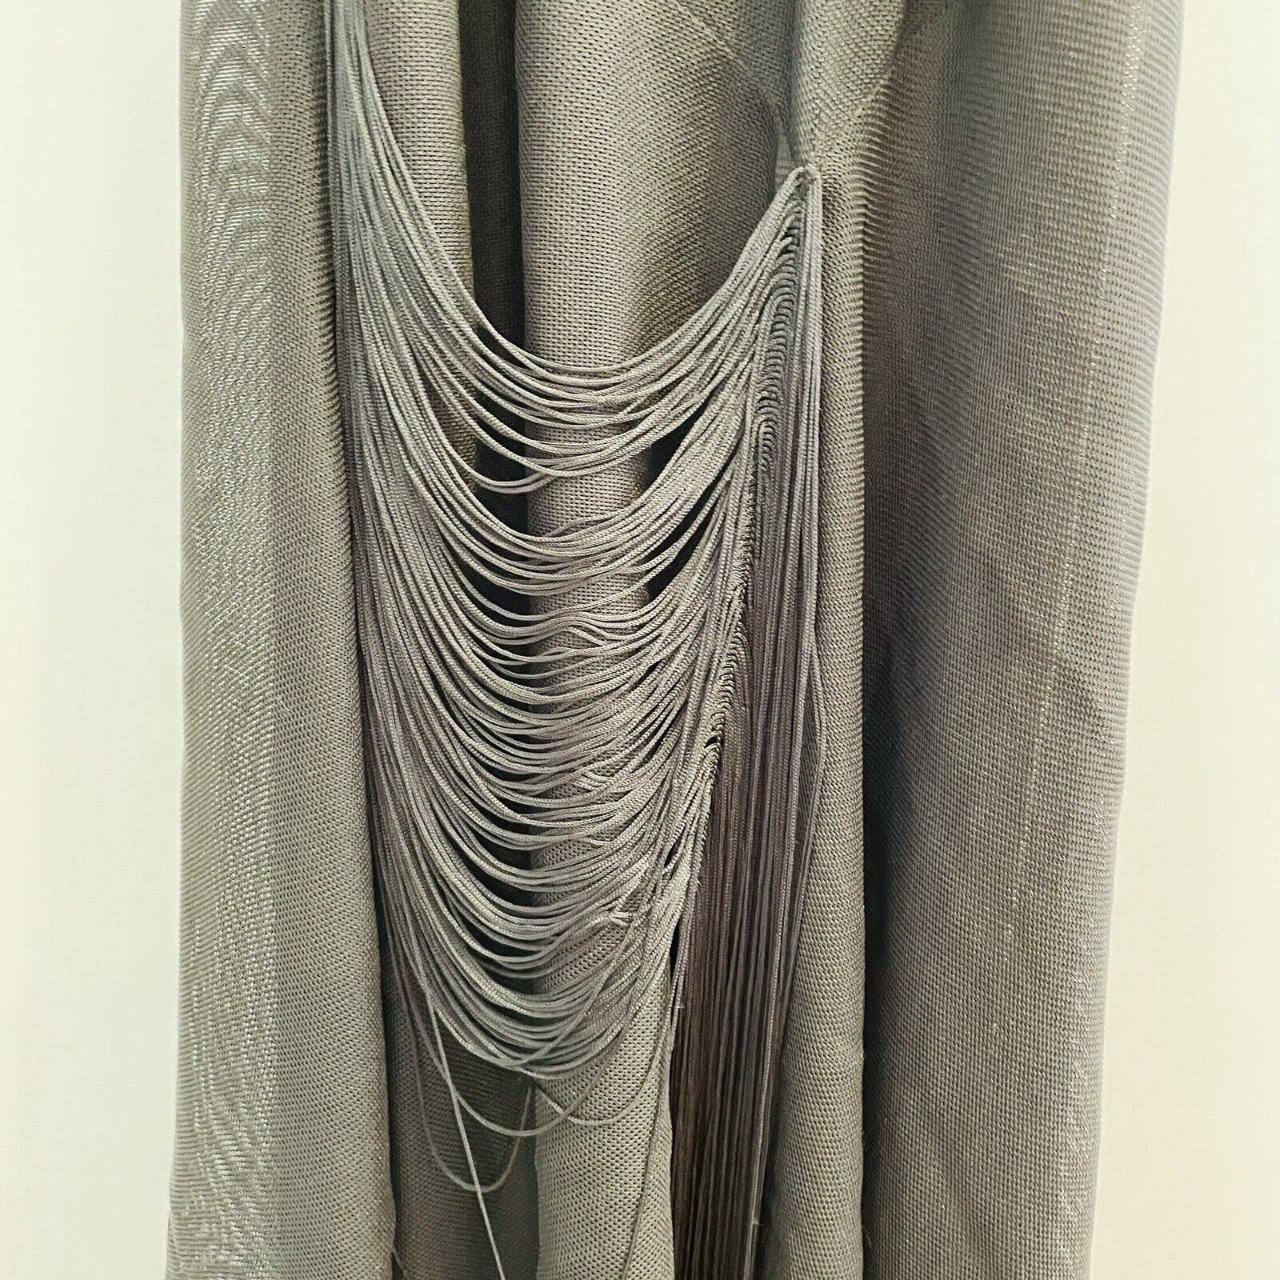 Manning Cartell Weaving Magic Maxi Dress Size 8 BNWT... - Depop